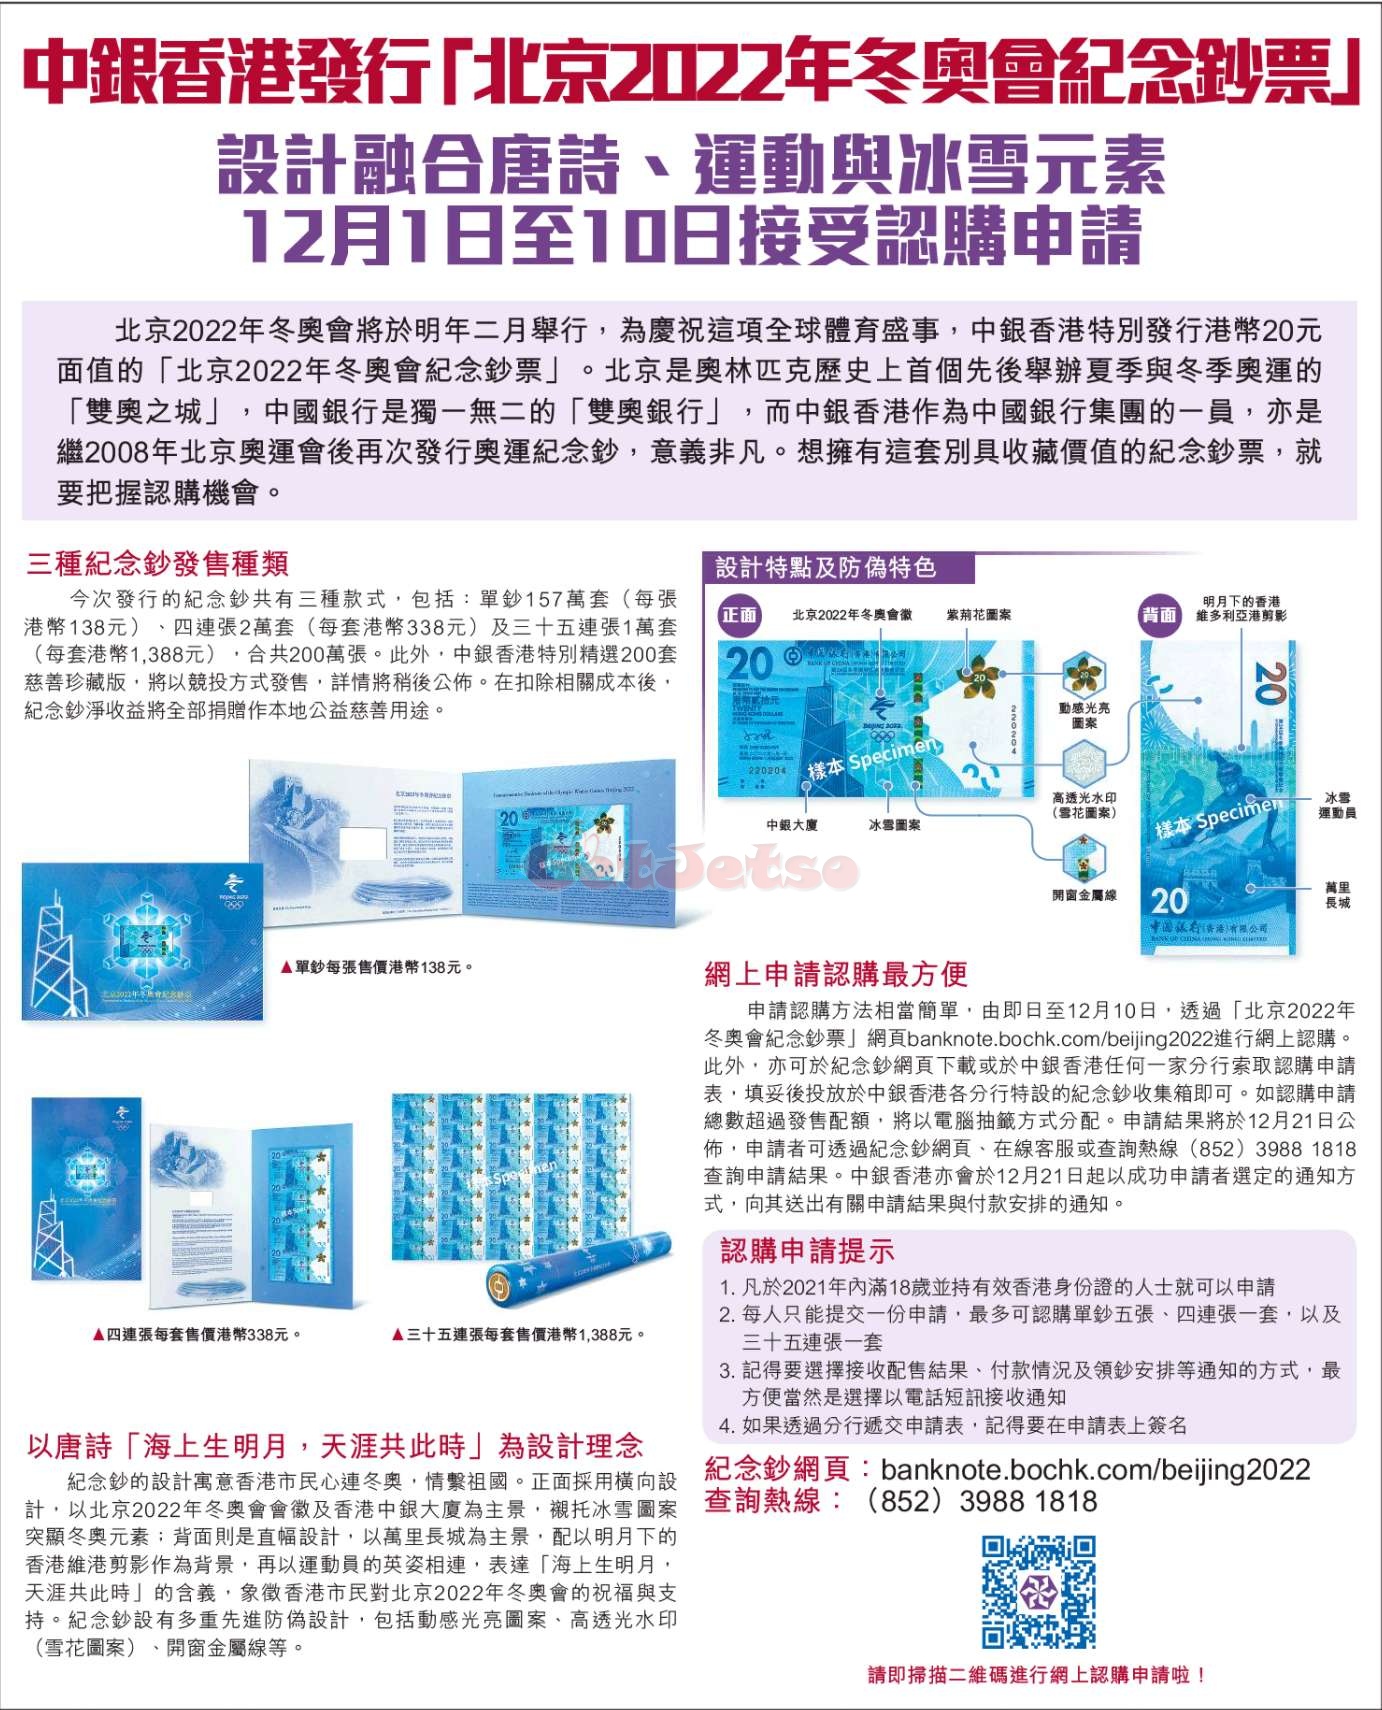 中銀香港「北京2022年冬奧會紀念鈔票」正式接受認購圖片2